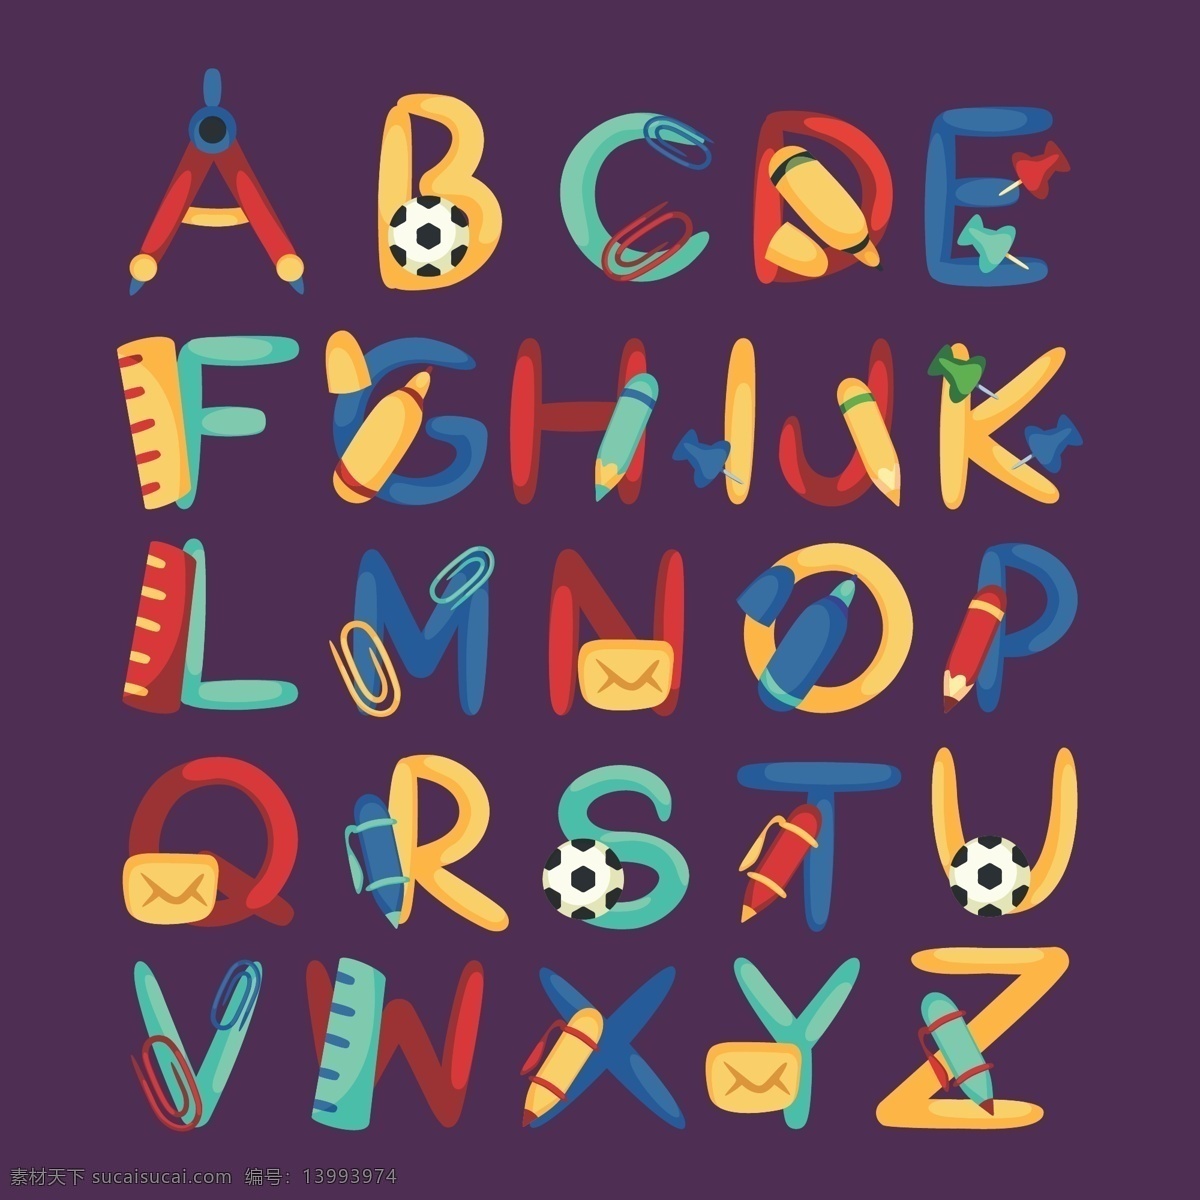 英文字母设计 创意字体 字母 字体 矢量 英文字体 图标 标签 logo 卡通设计